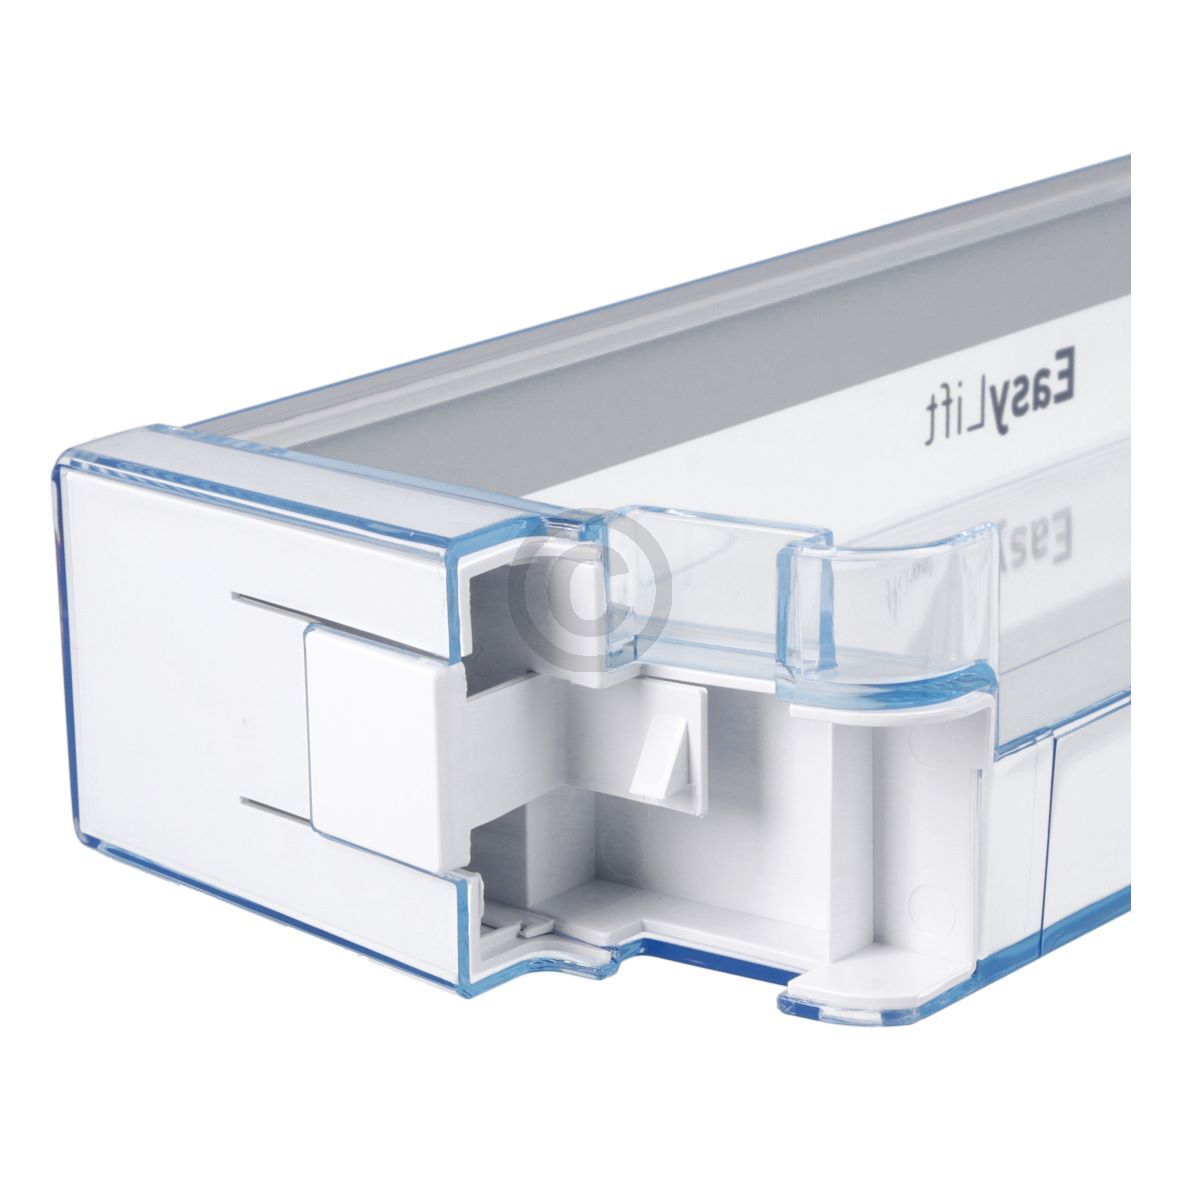 Abstellfach BOSCH 11000684 Absteller Easy Lift 470x52mm für Kühlschranktüre